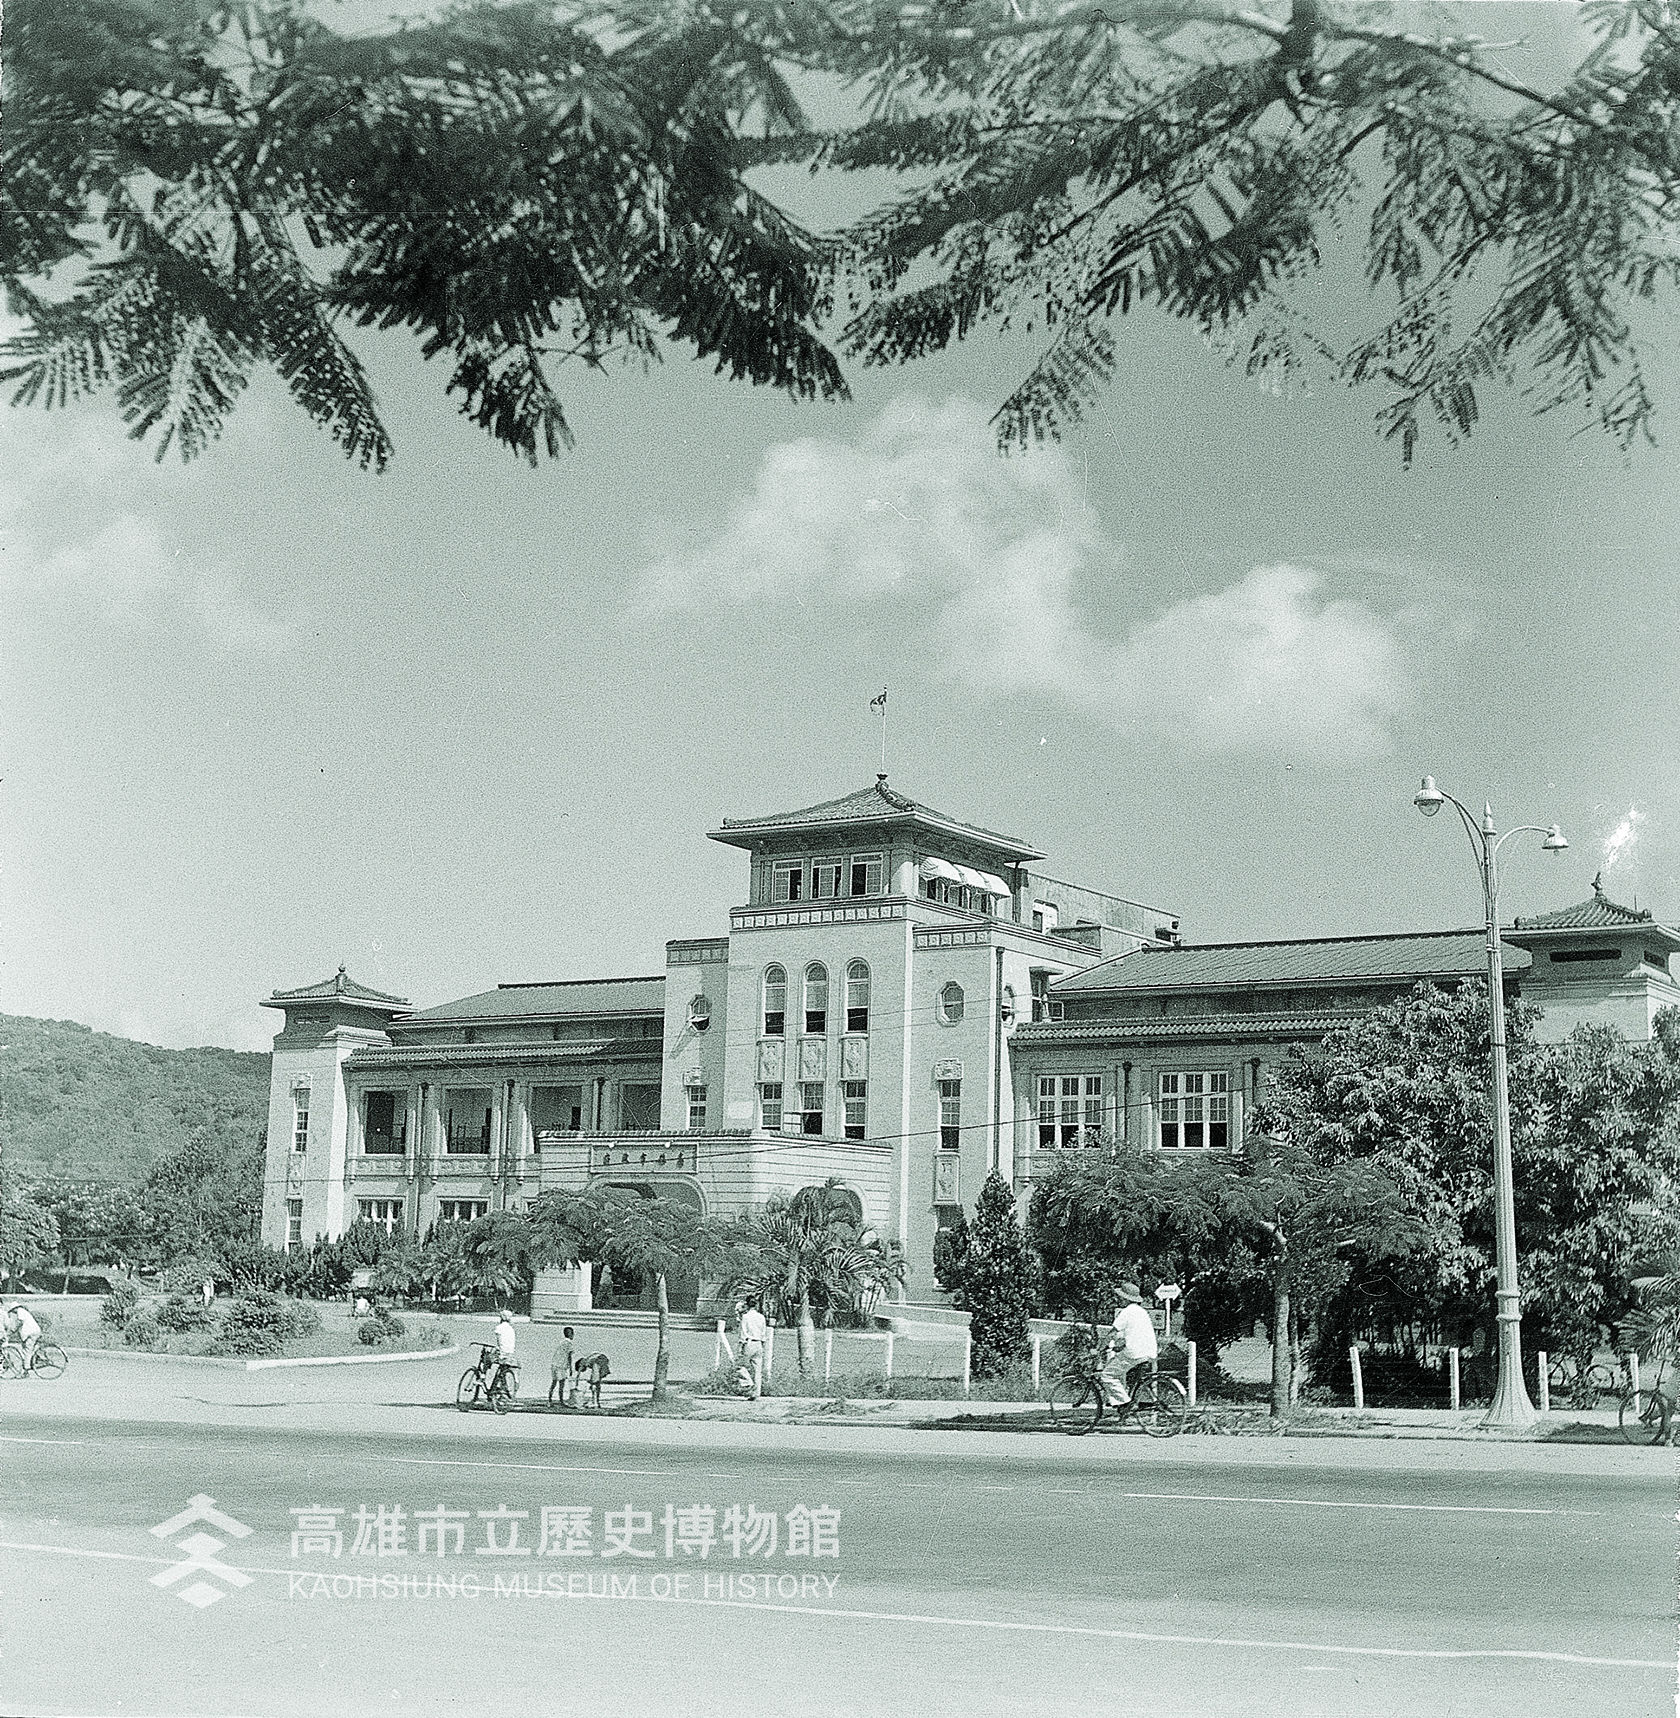 影像拍攝於1951年。(高雄市立歷史博物館藏 KH2004.009.347)